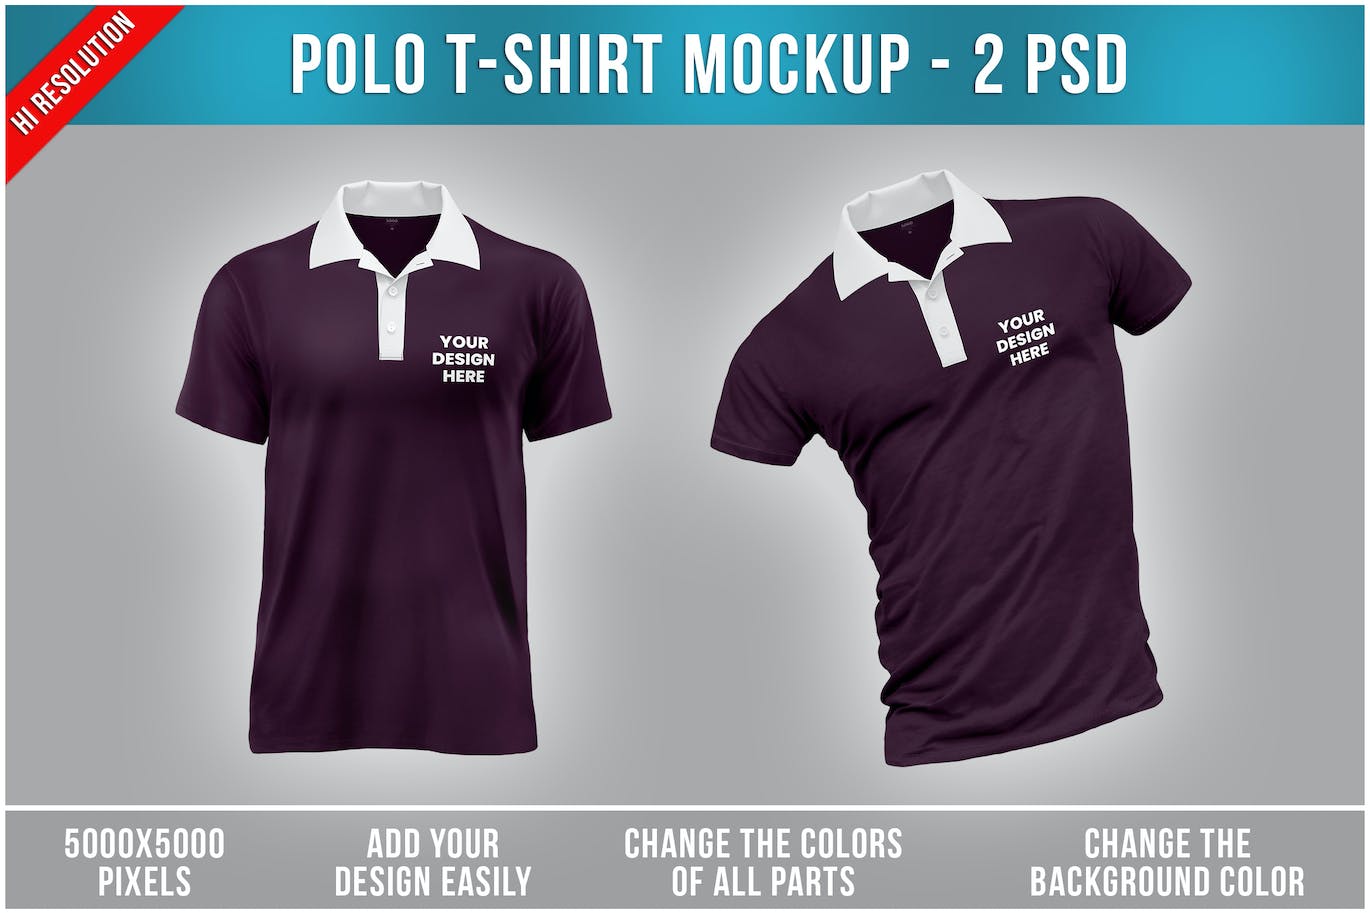 马球T恤Polo衫服装设计样机 Polo T-Shirt Mockup 样机素材 第1张